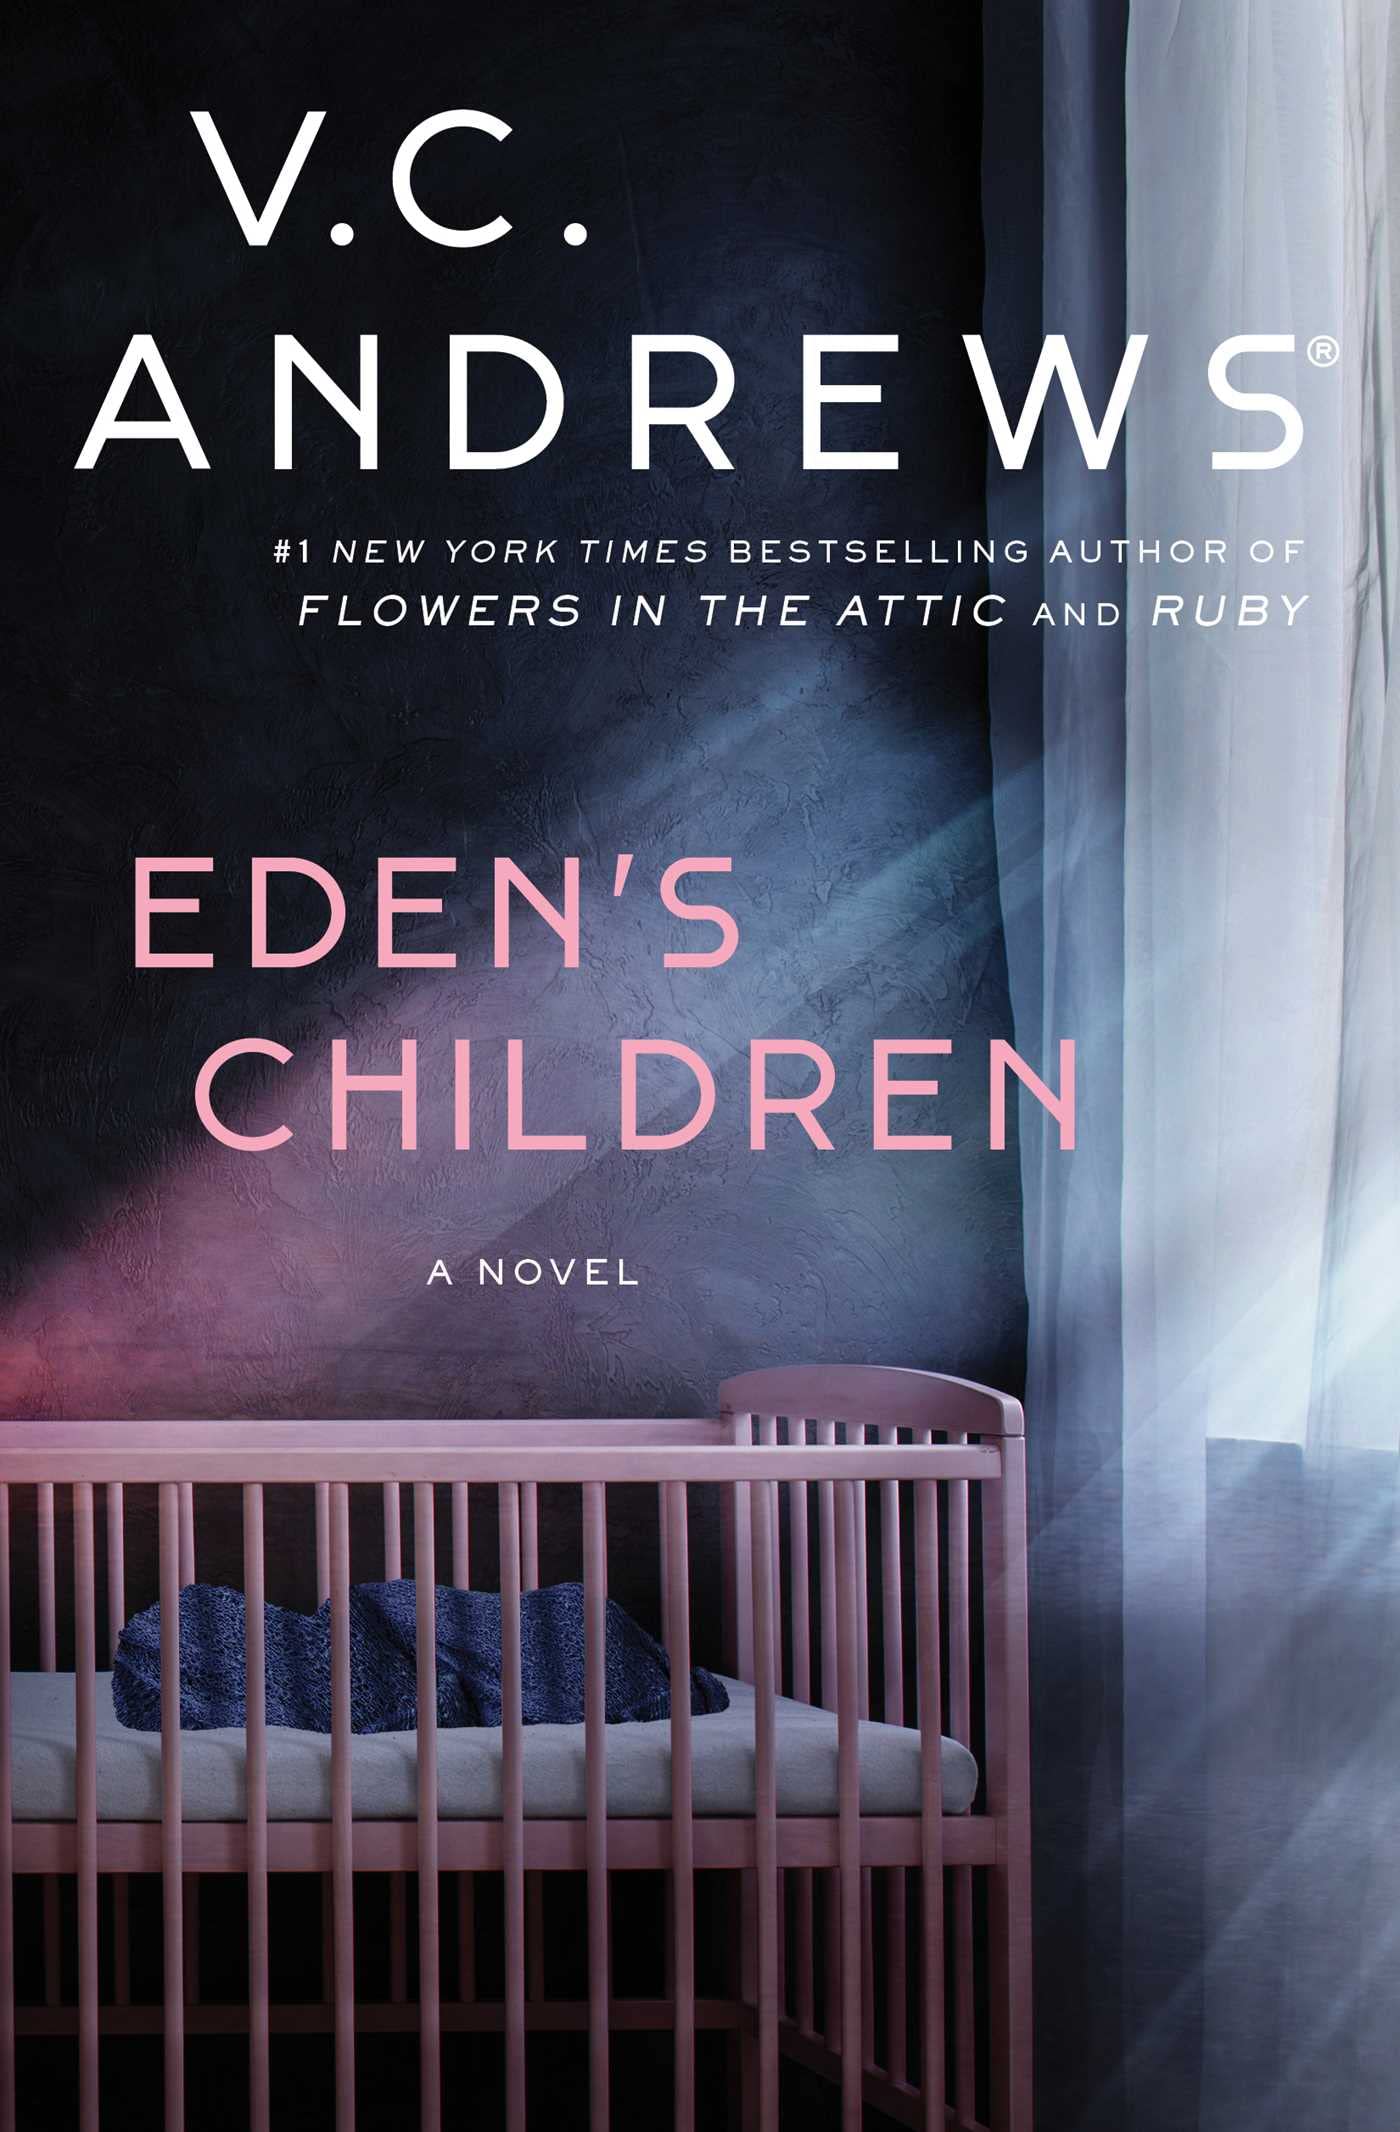 Image for "Eden's Children"